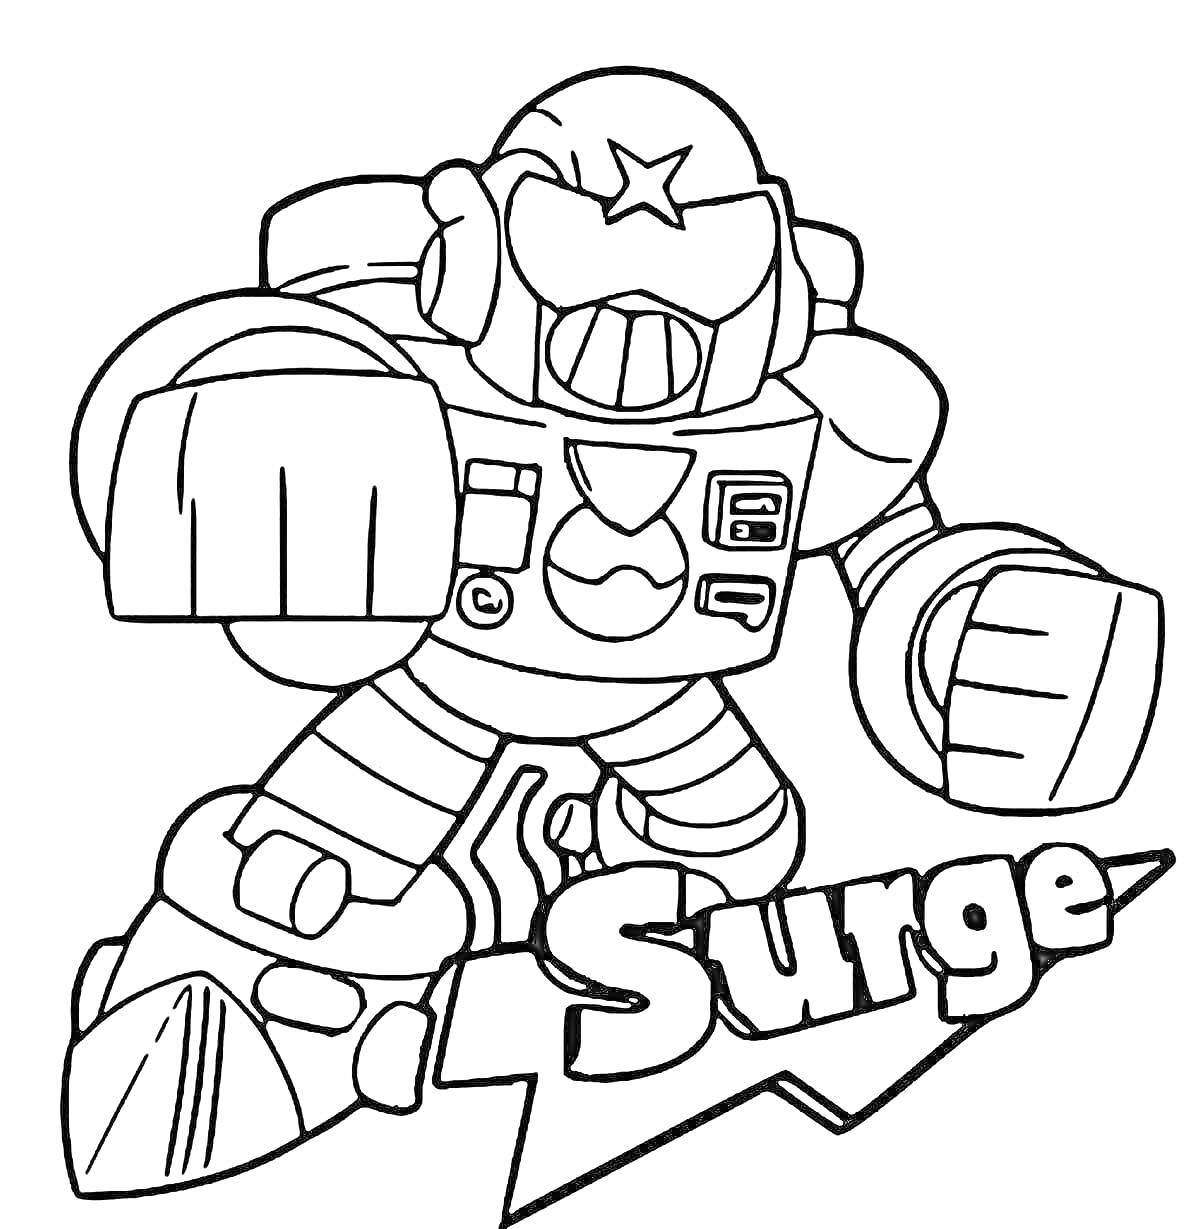 Раскраска Персонаж Surge из игры Brawl Stars в боевой стойке, с поднятым кулаком, снаряжённый оружием, с шлемом со звездой